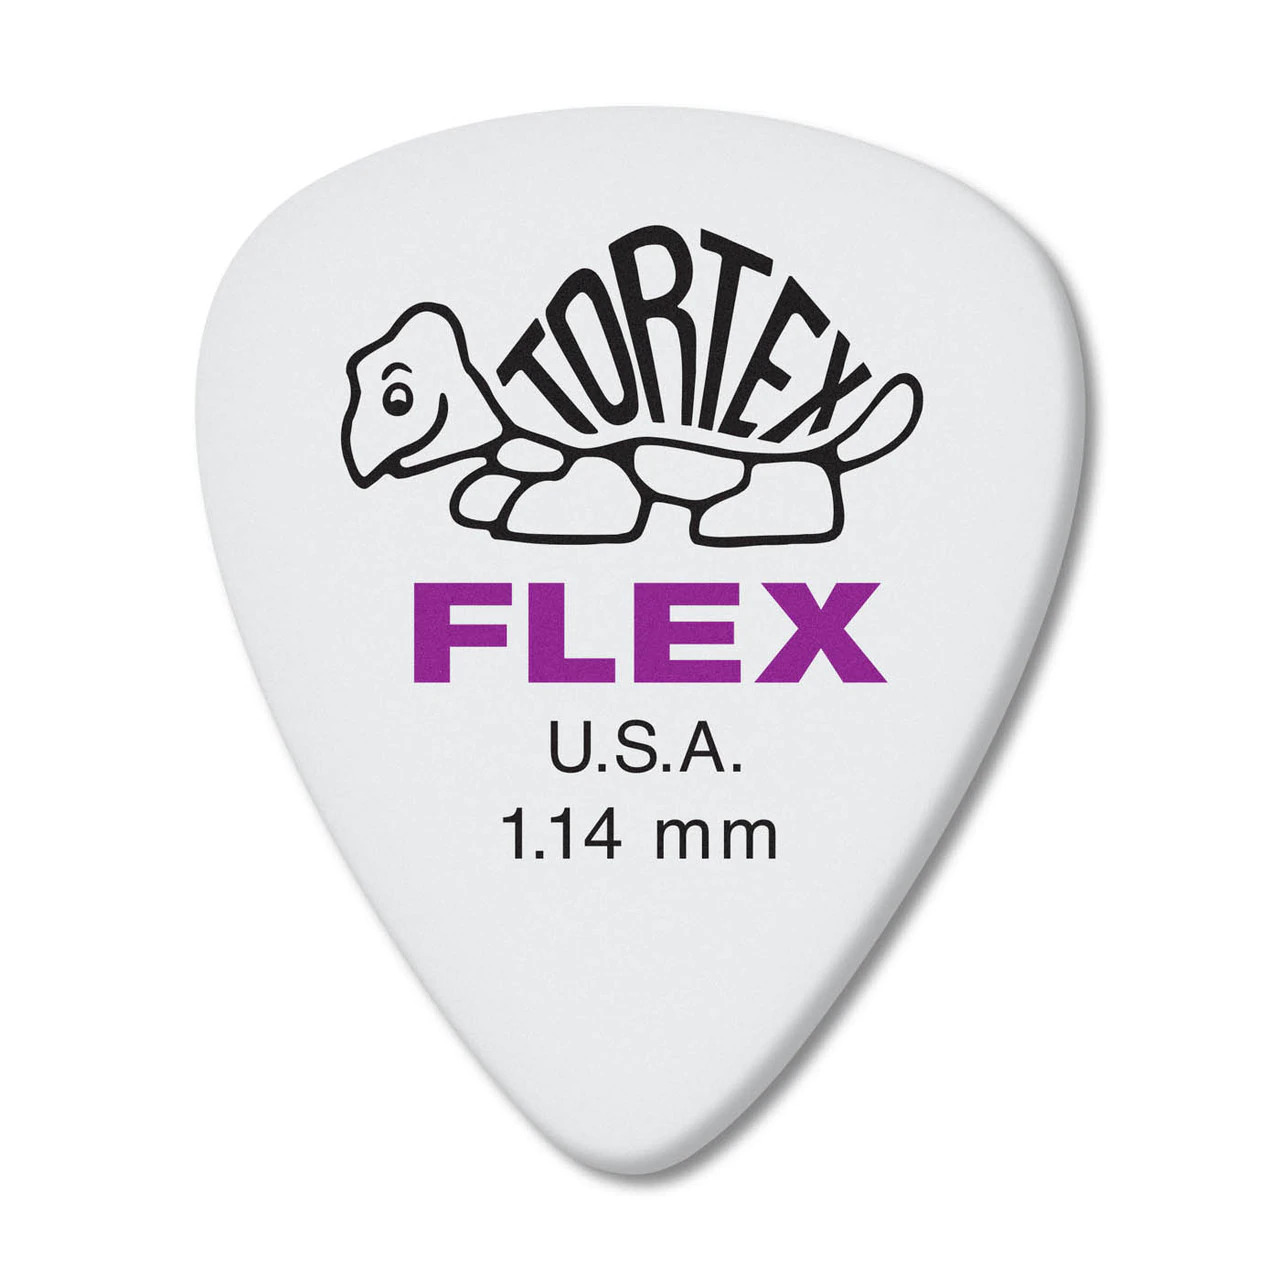 Dunlop 428P114 TORTEX® Flex™ Standard 1.14m - 12 Pack